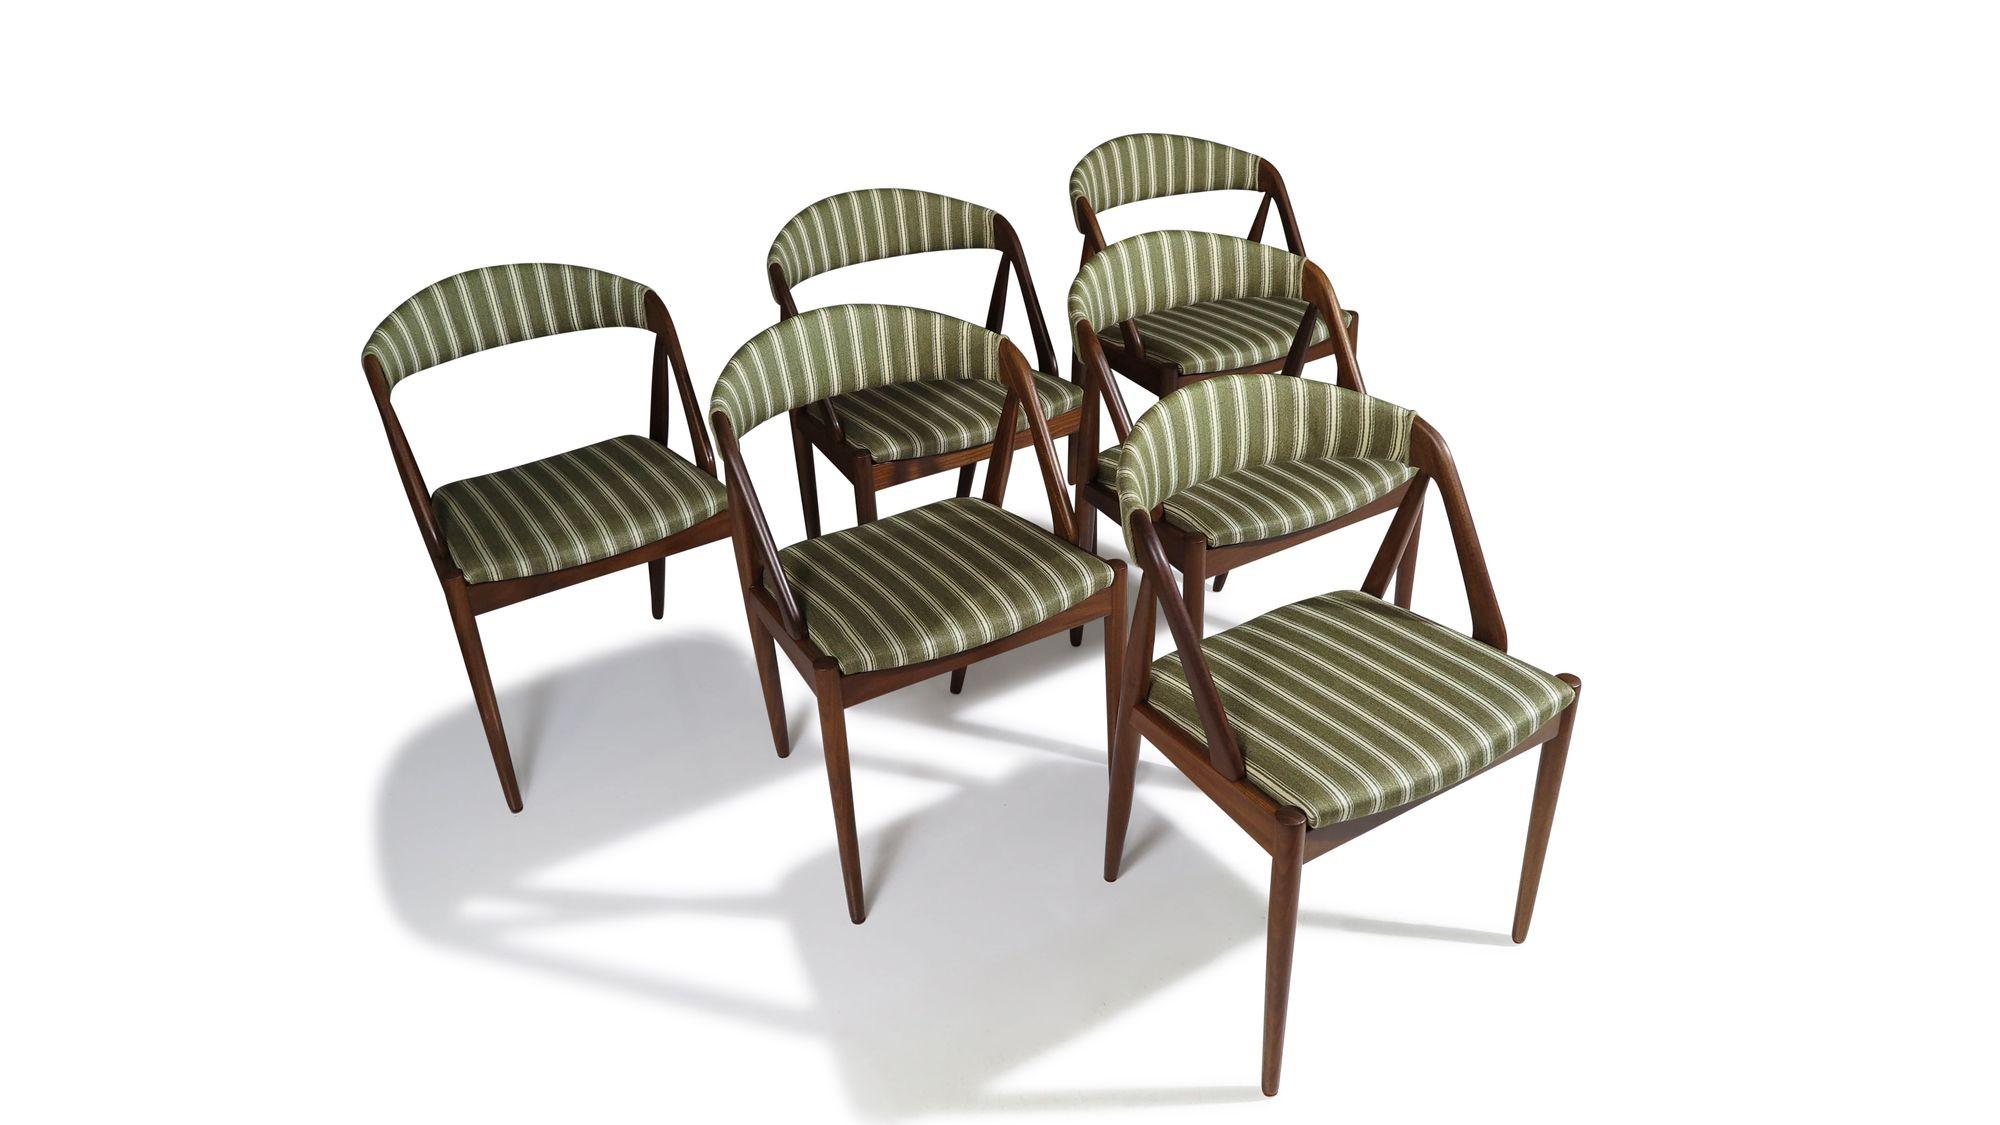 Chaises de salle à manger en noyer de Kai Kristiansen, modèle 31 pour Schou Andersen, vers 1955, Danemark. Ces chaises de salle à manger offrent un confort et un soutien dorsal exceptionnels. Les sièges sont construits avec des cadres en bois